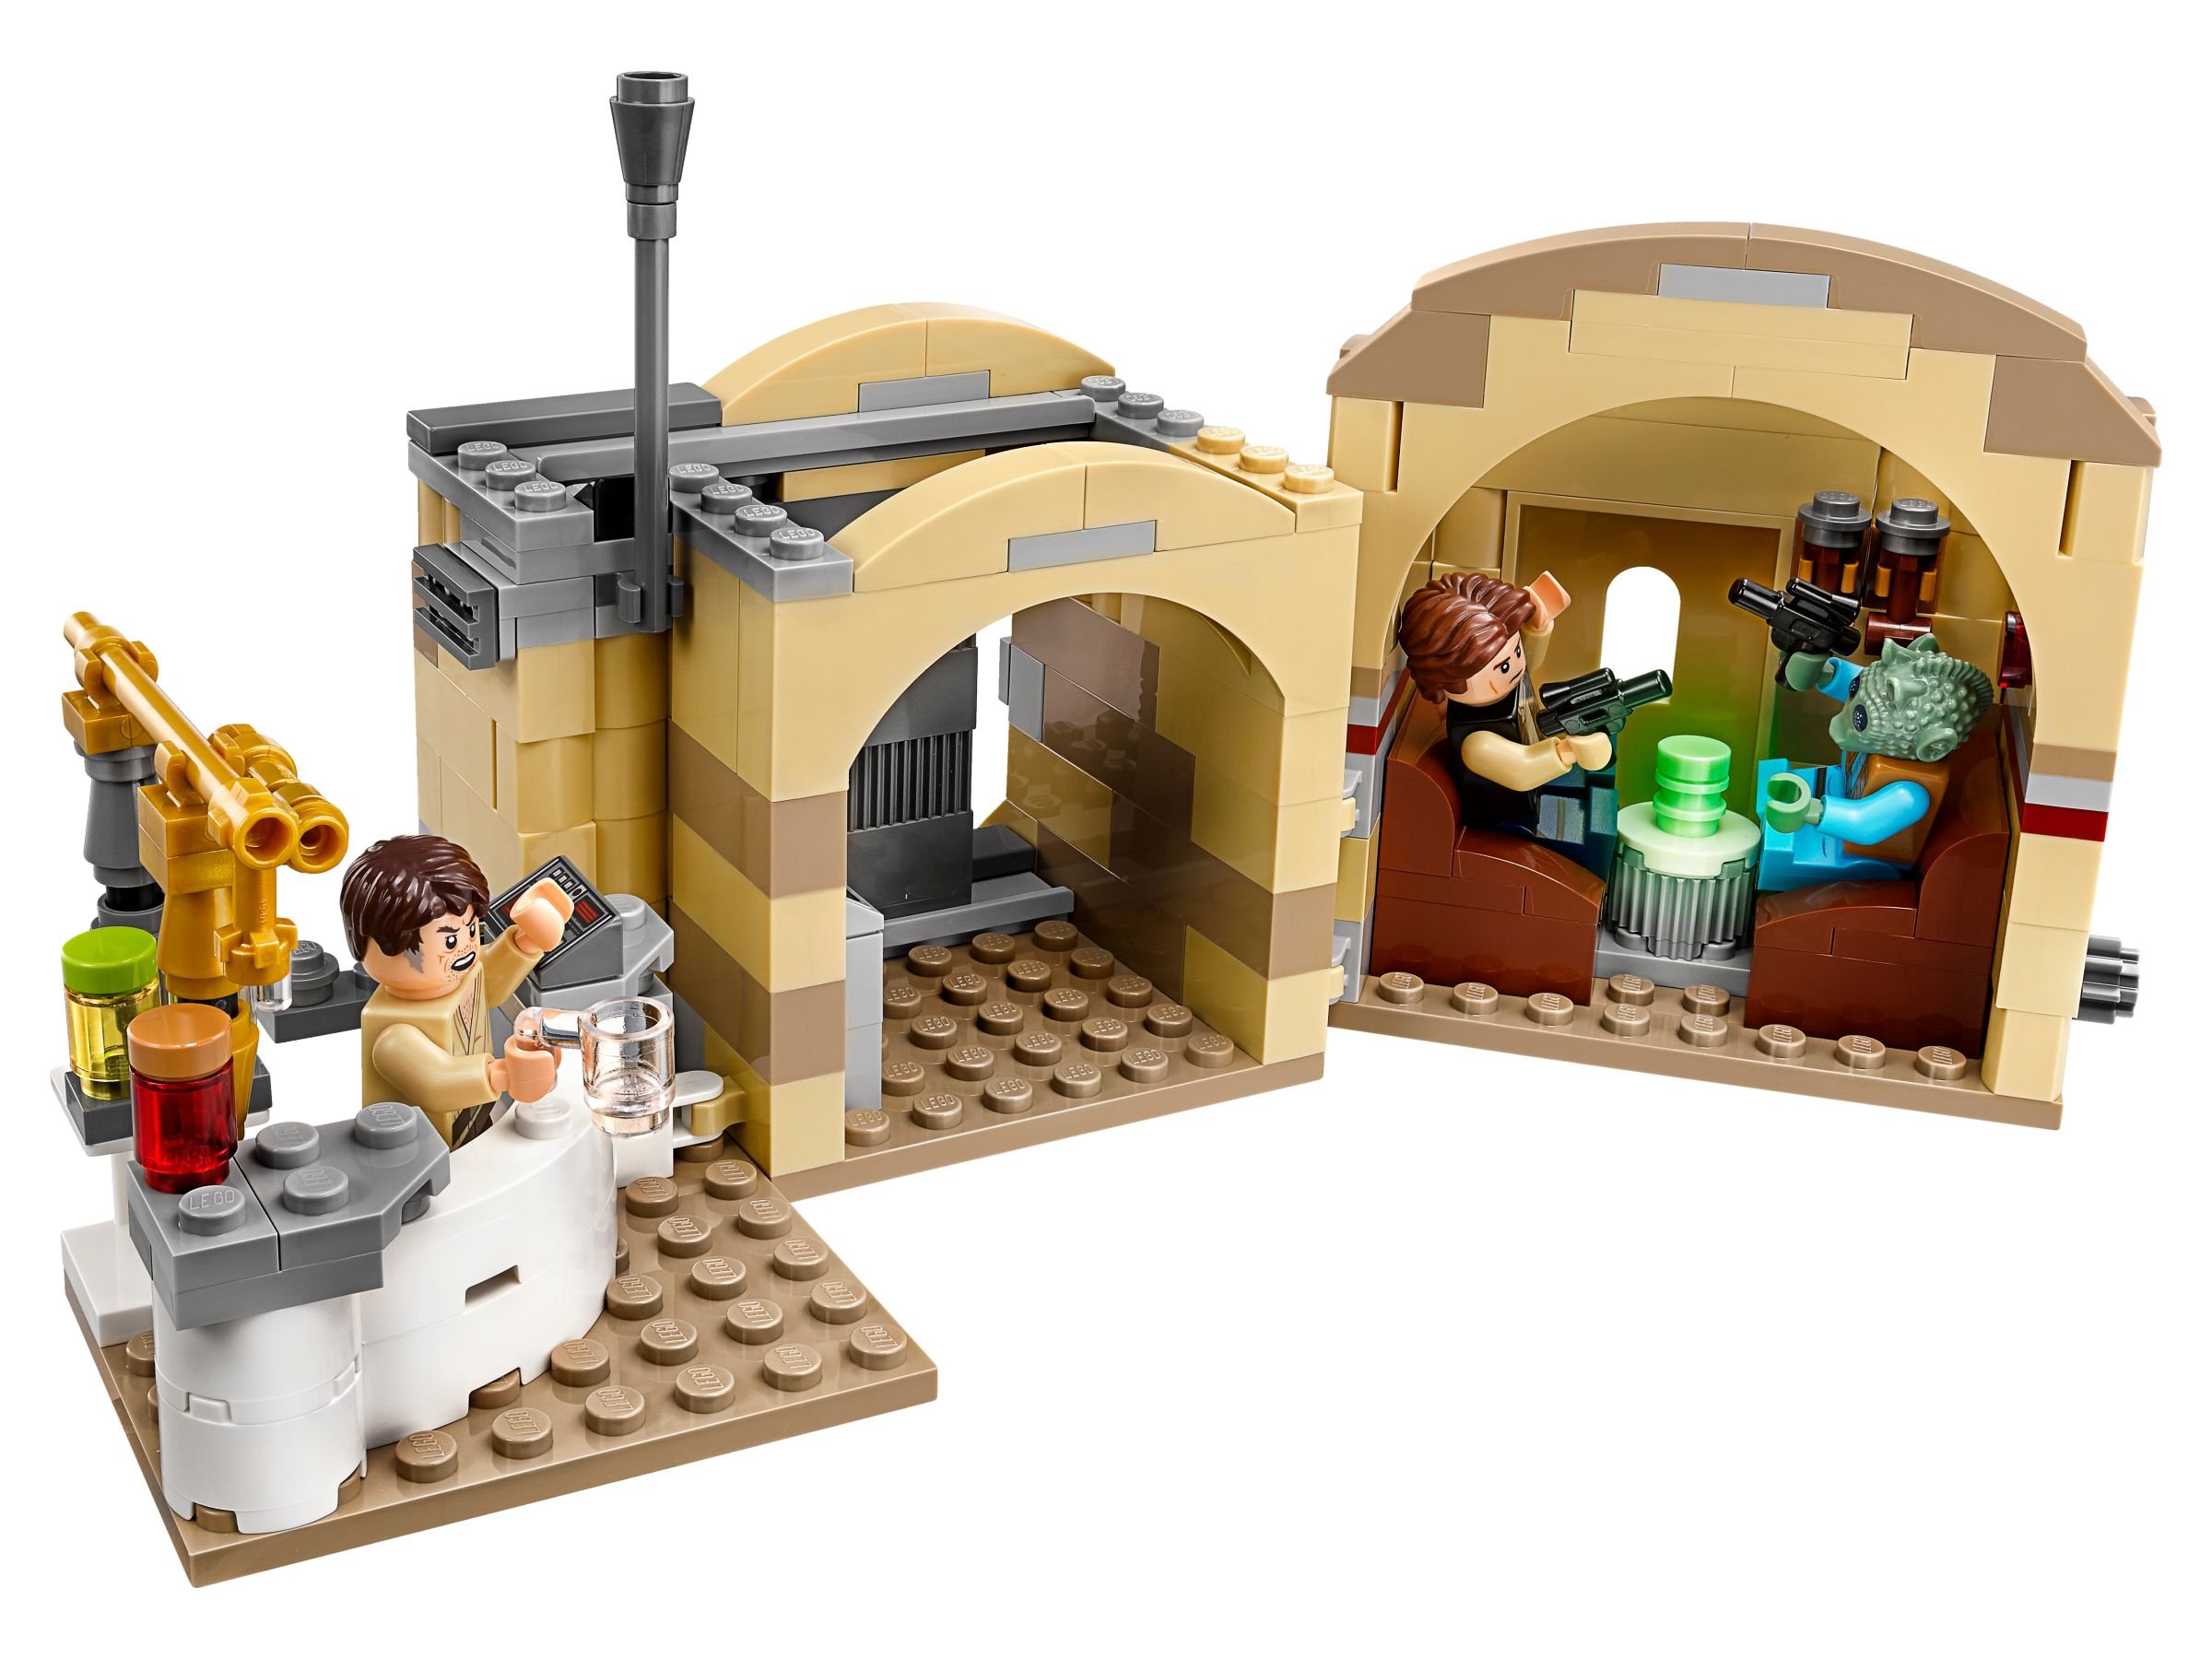 LEGO Star Wars 75205 Mos Eisley Cantina™ LEGO_75205_alt3.jpg